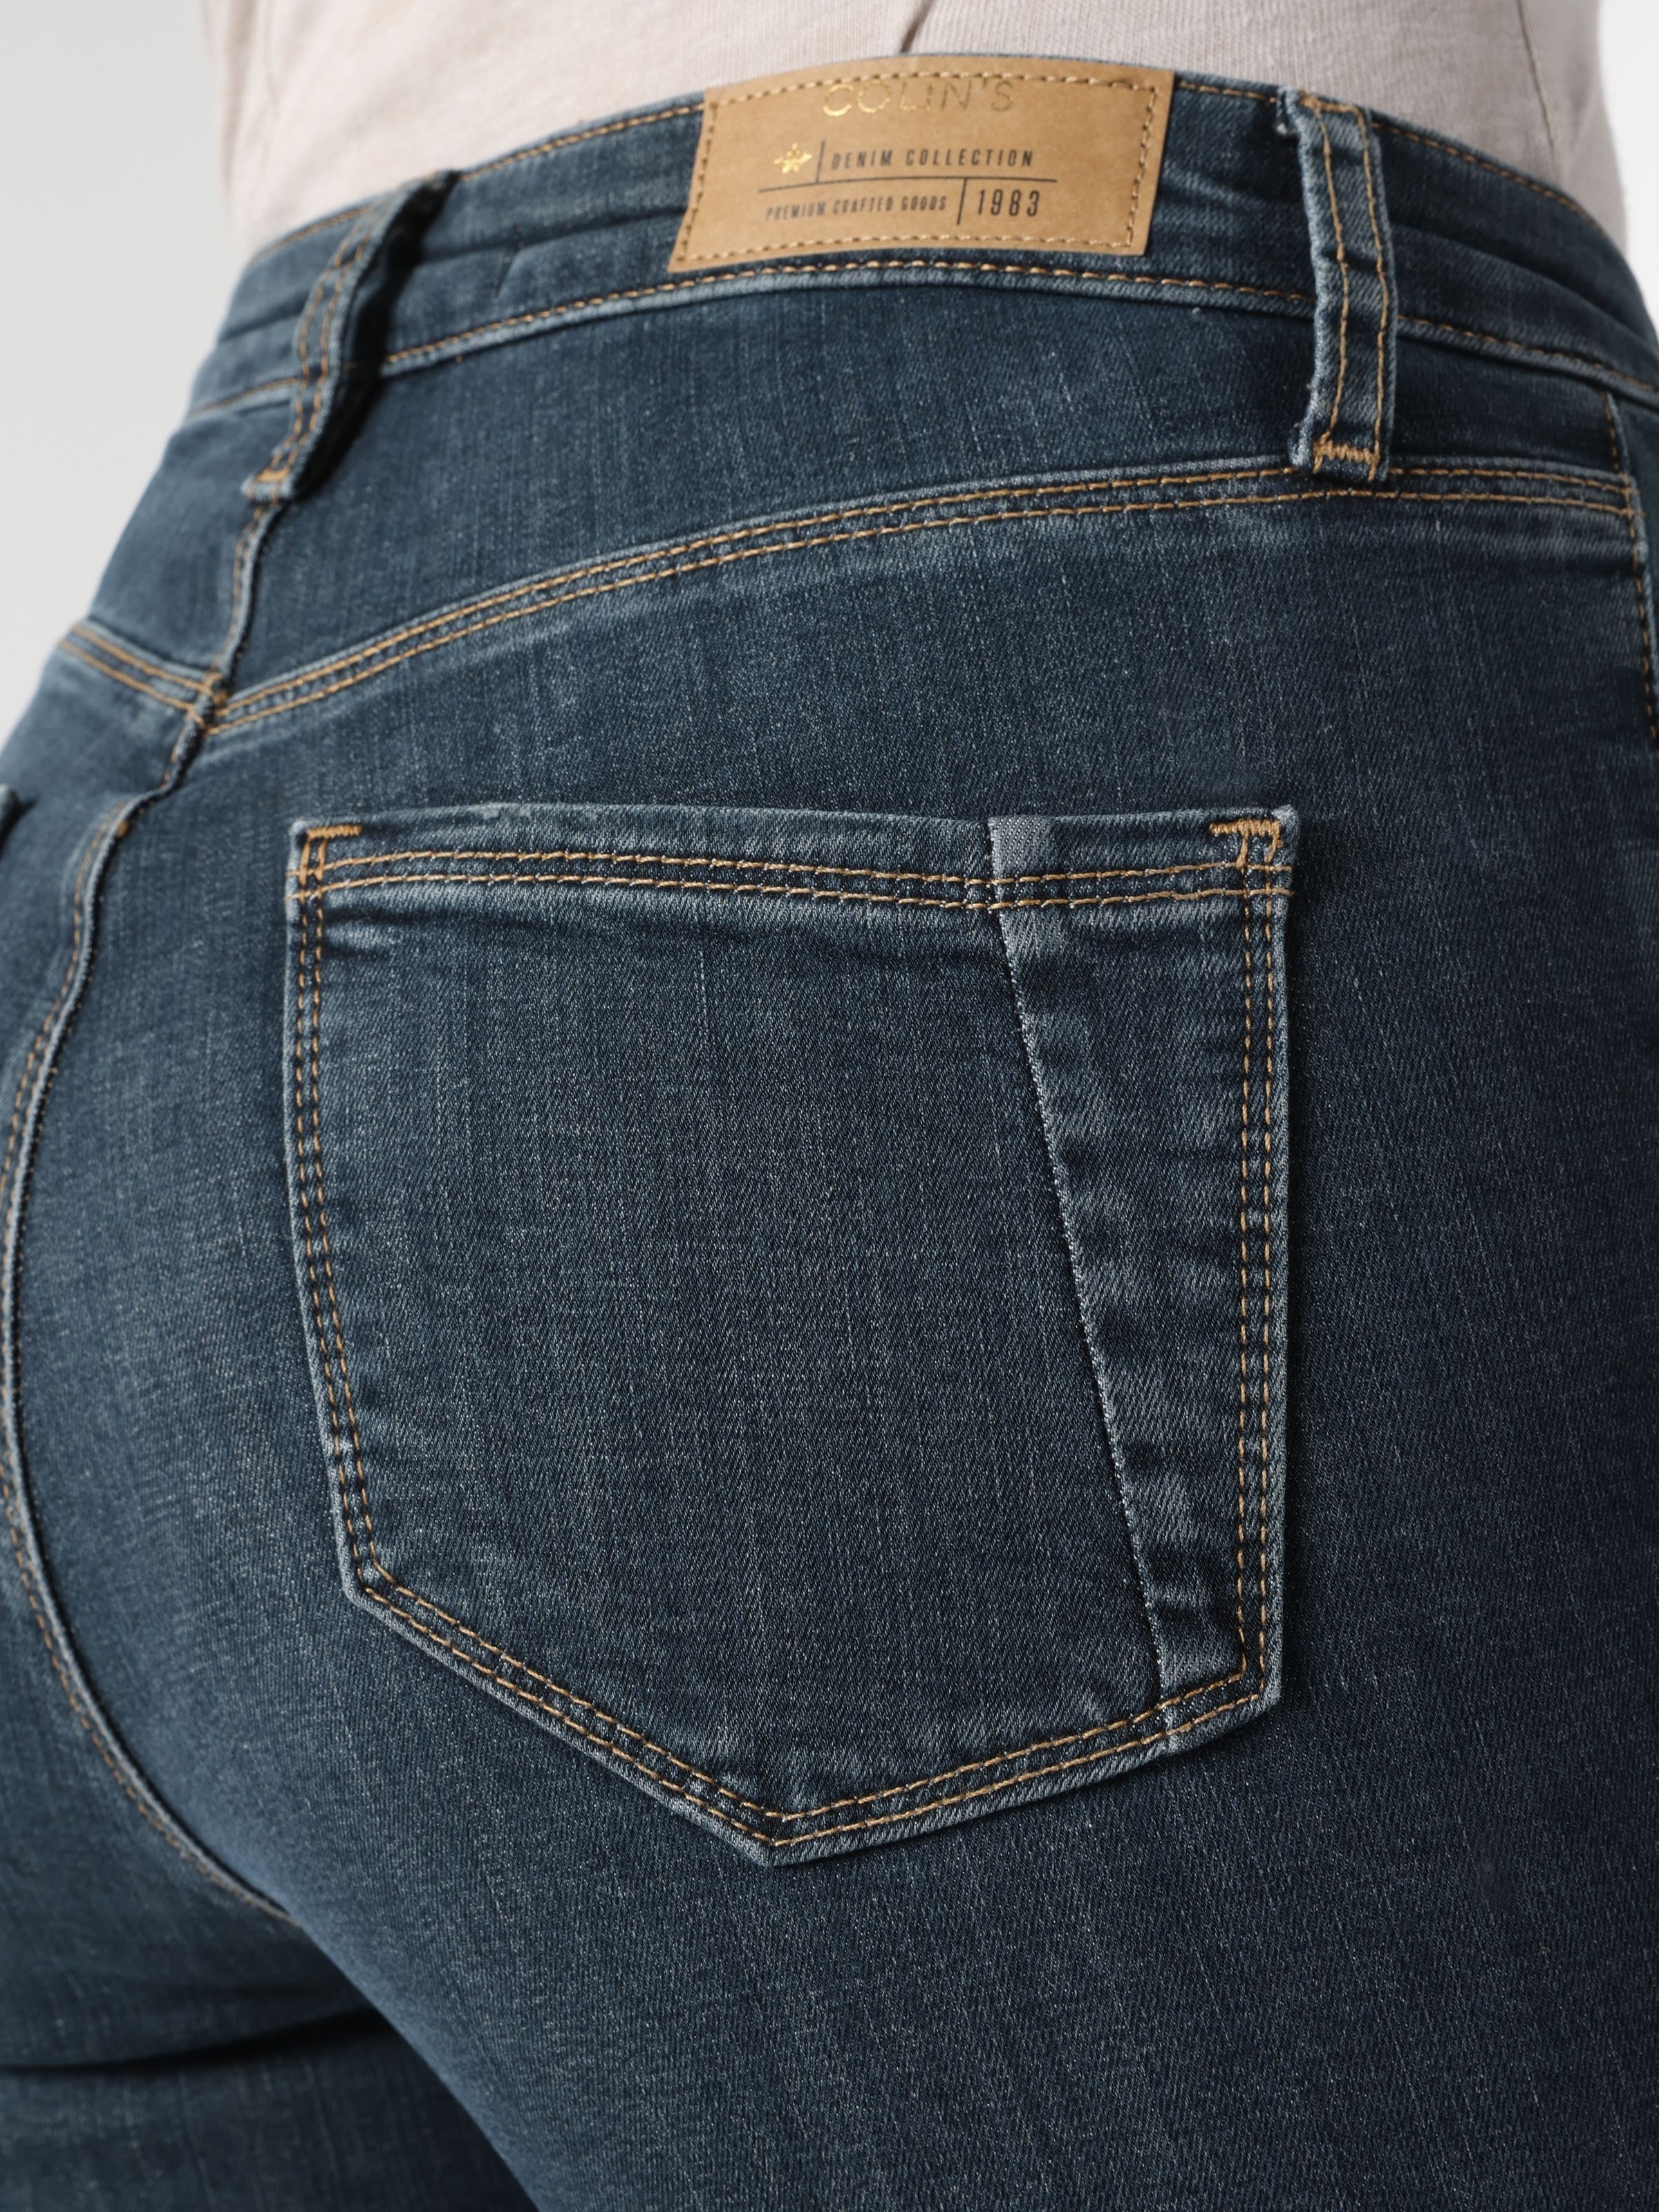 Afficher les détails de Pantalon 760 Diana Super Slim Fit Taille Haute Jambe Skinny Bleu Pour Femme